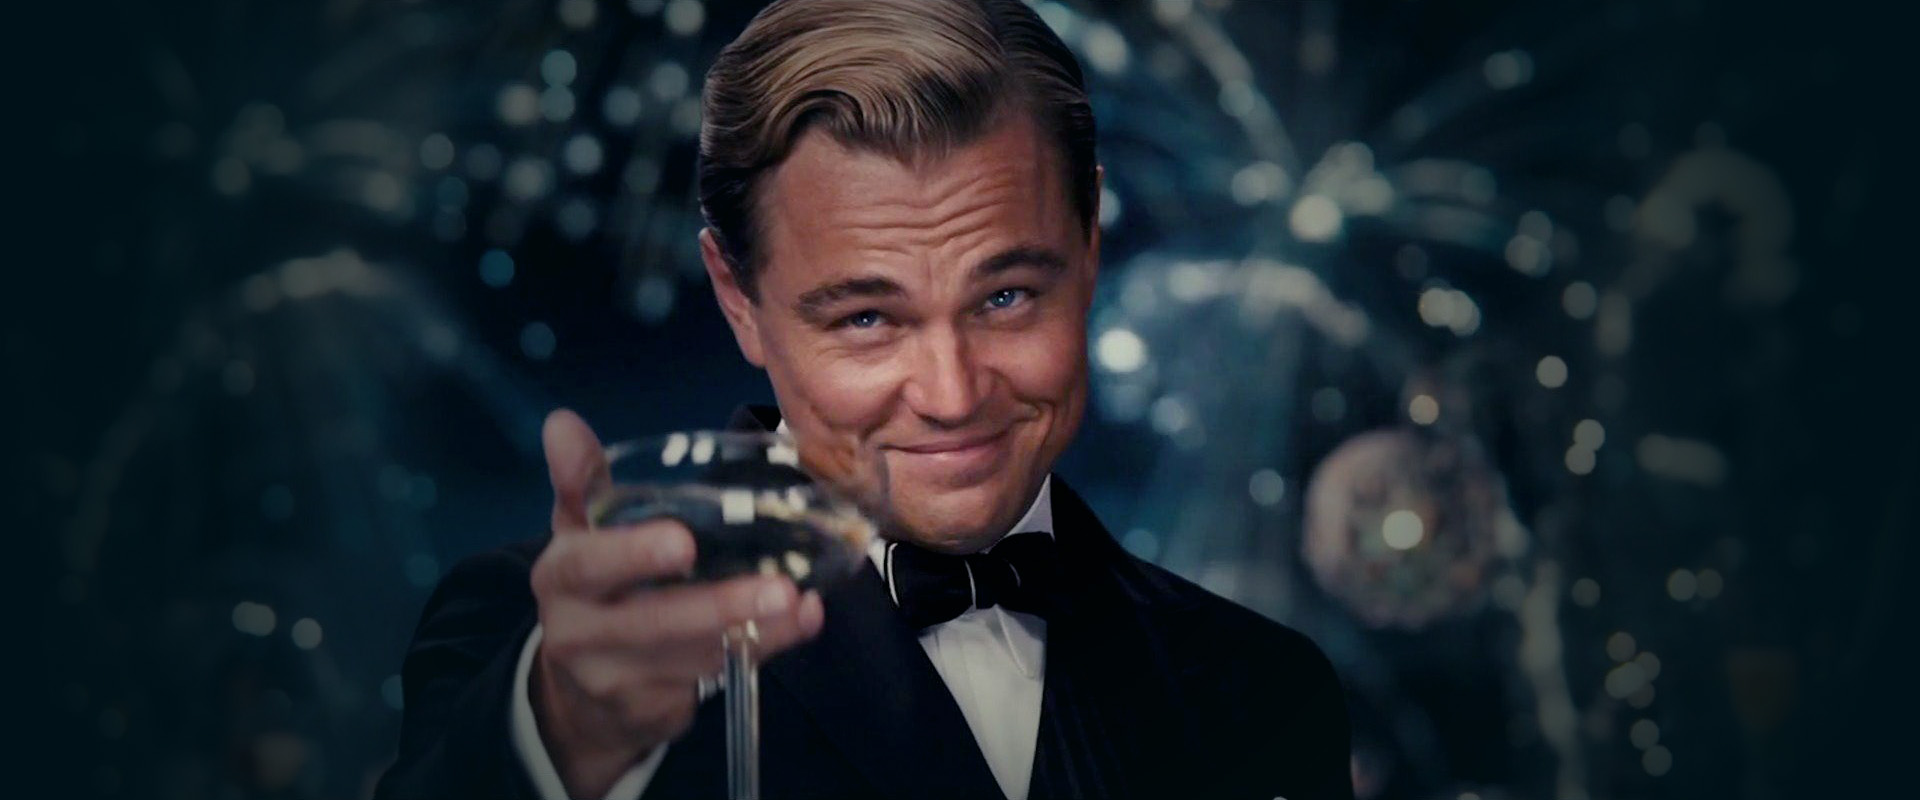 [Review phim] “The Great Gatsby” – Ám ảnh còn đọng lại mãi mãi